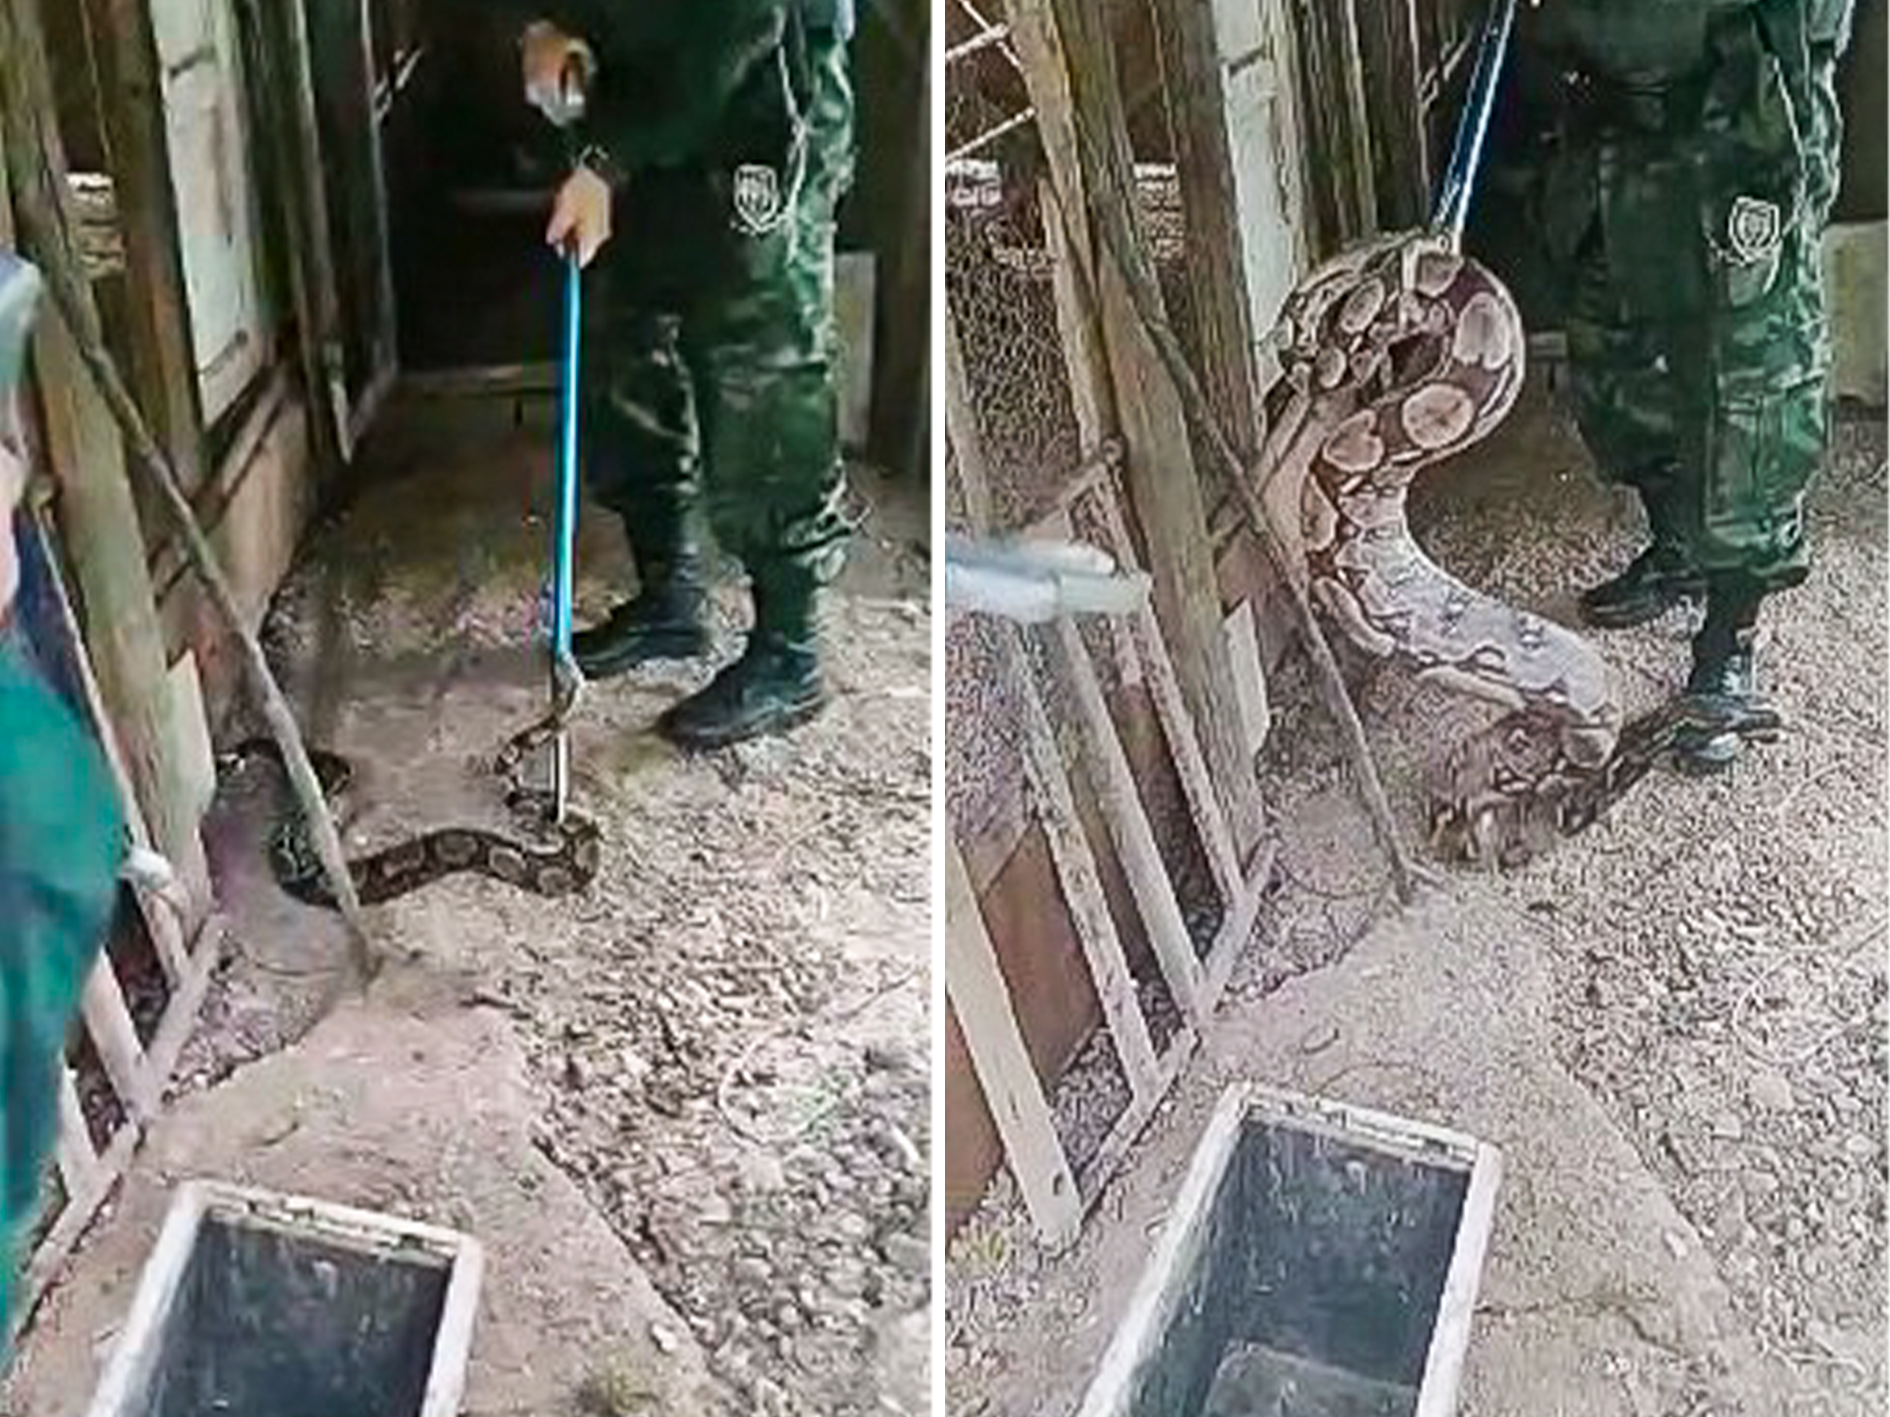 Animal foi achado na manhã dessa terça-feira (7), em propriedade no bairro Boa Vista; resgate foi feito pela Polícia Militar Ambiental após acionamento